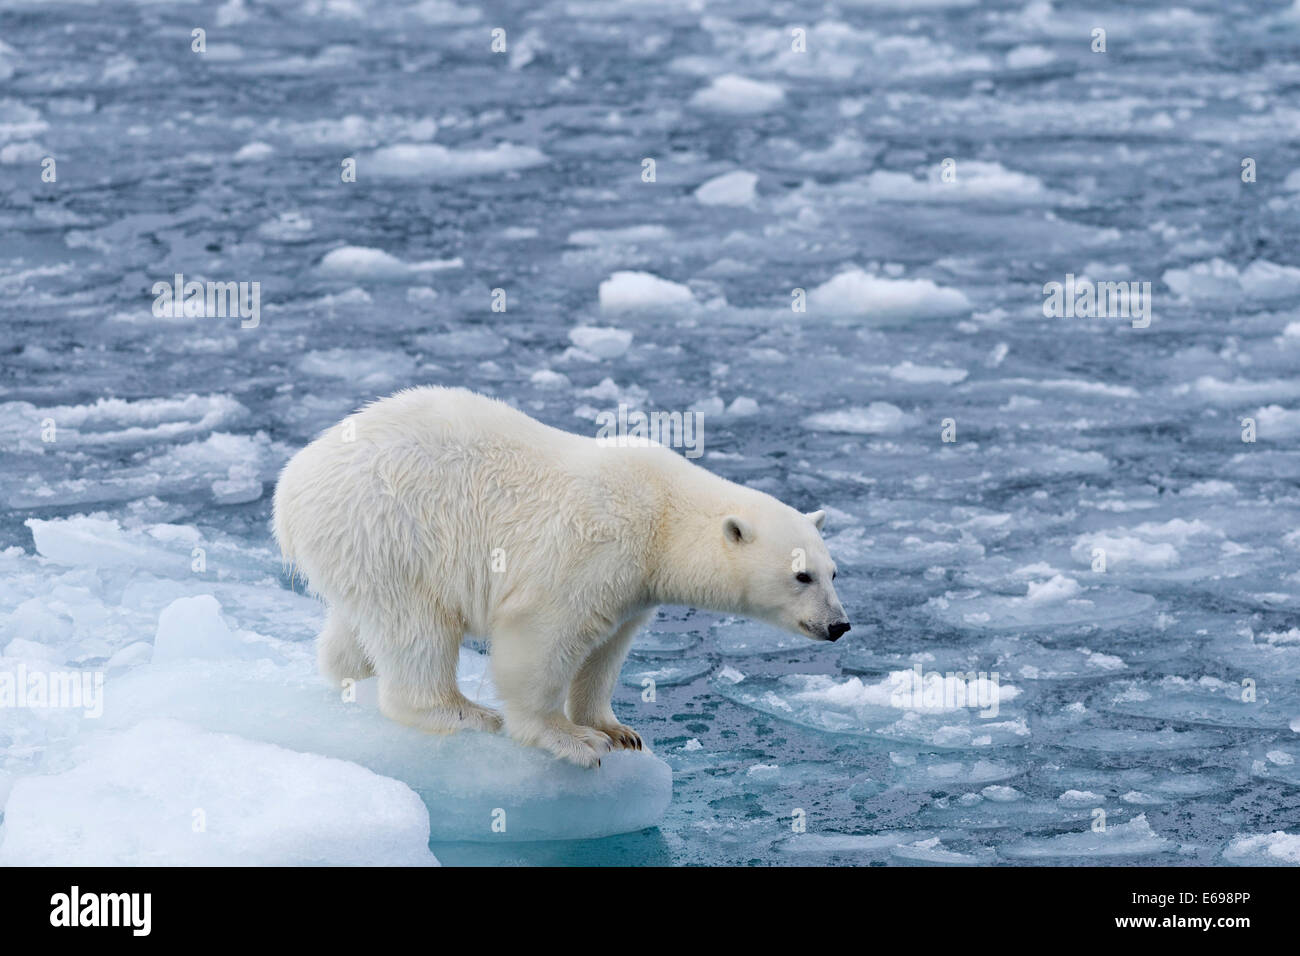 L'ours polaire (Ursus maritimus) debout sur le bord de la banquise, Spitsbergen, Svalbard, îles Svalbard et Jan Mayen (Norvège) Banque D'Images